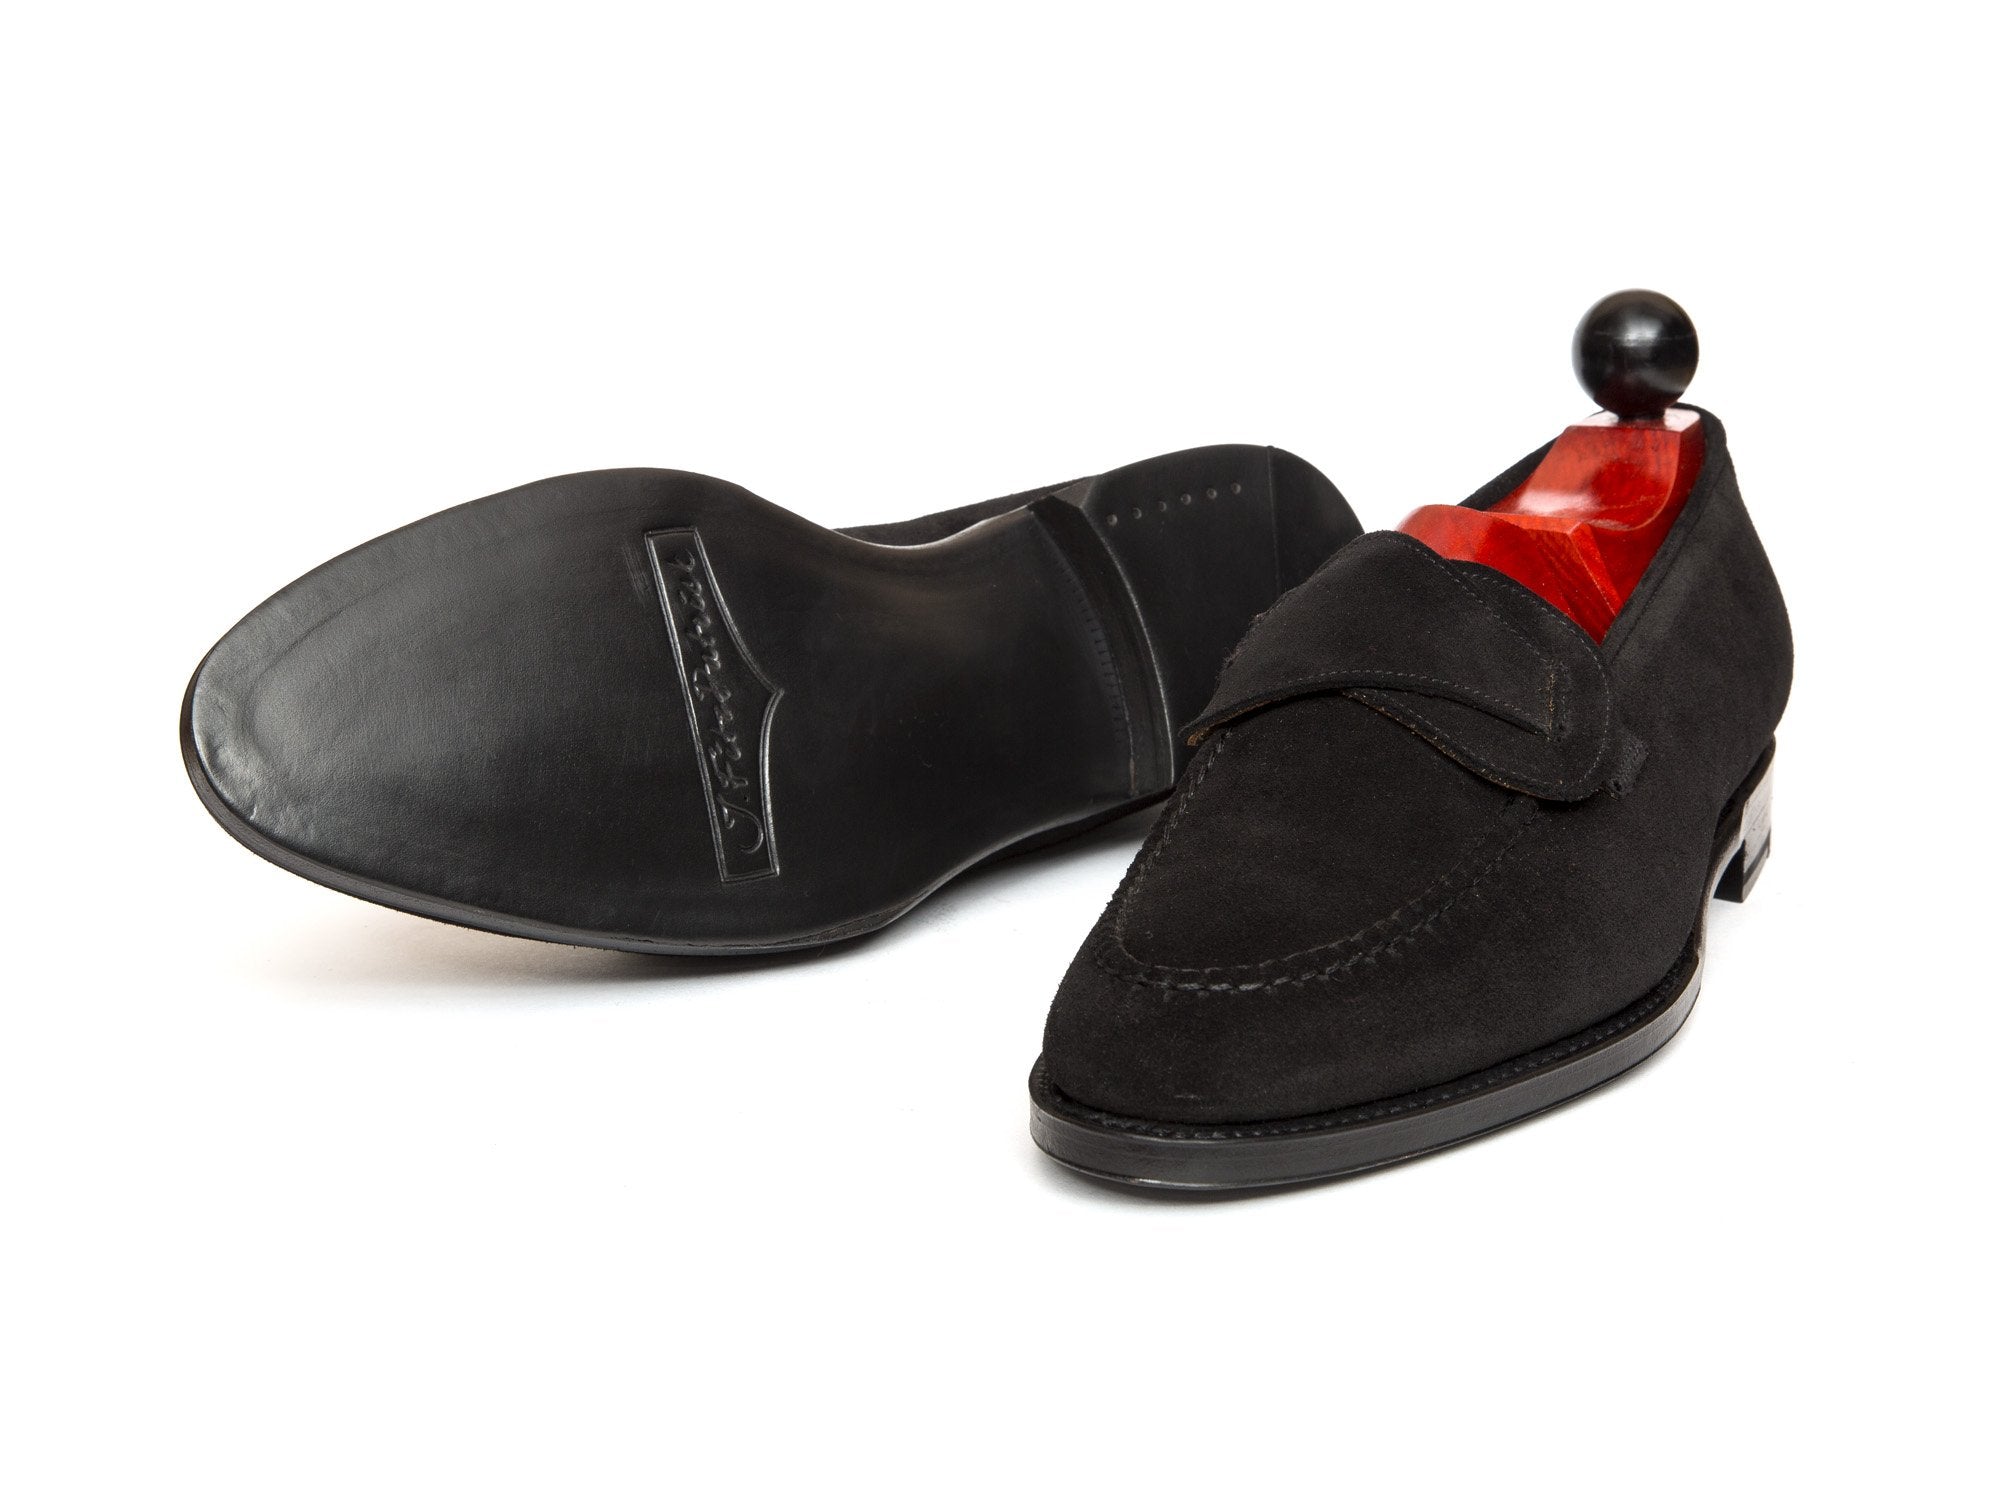 J.FitzPatrick Footwear - Hawthorne - Black Suede- TMG Last